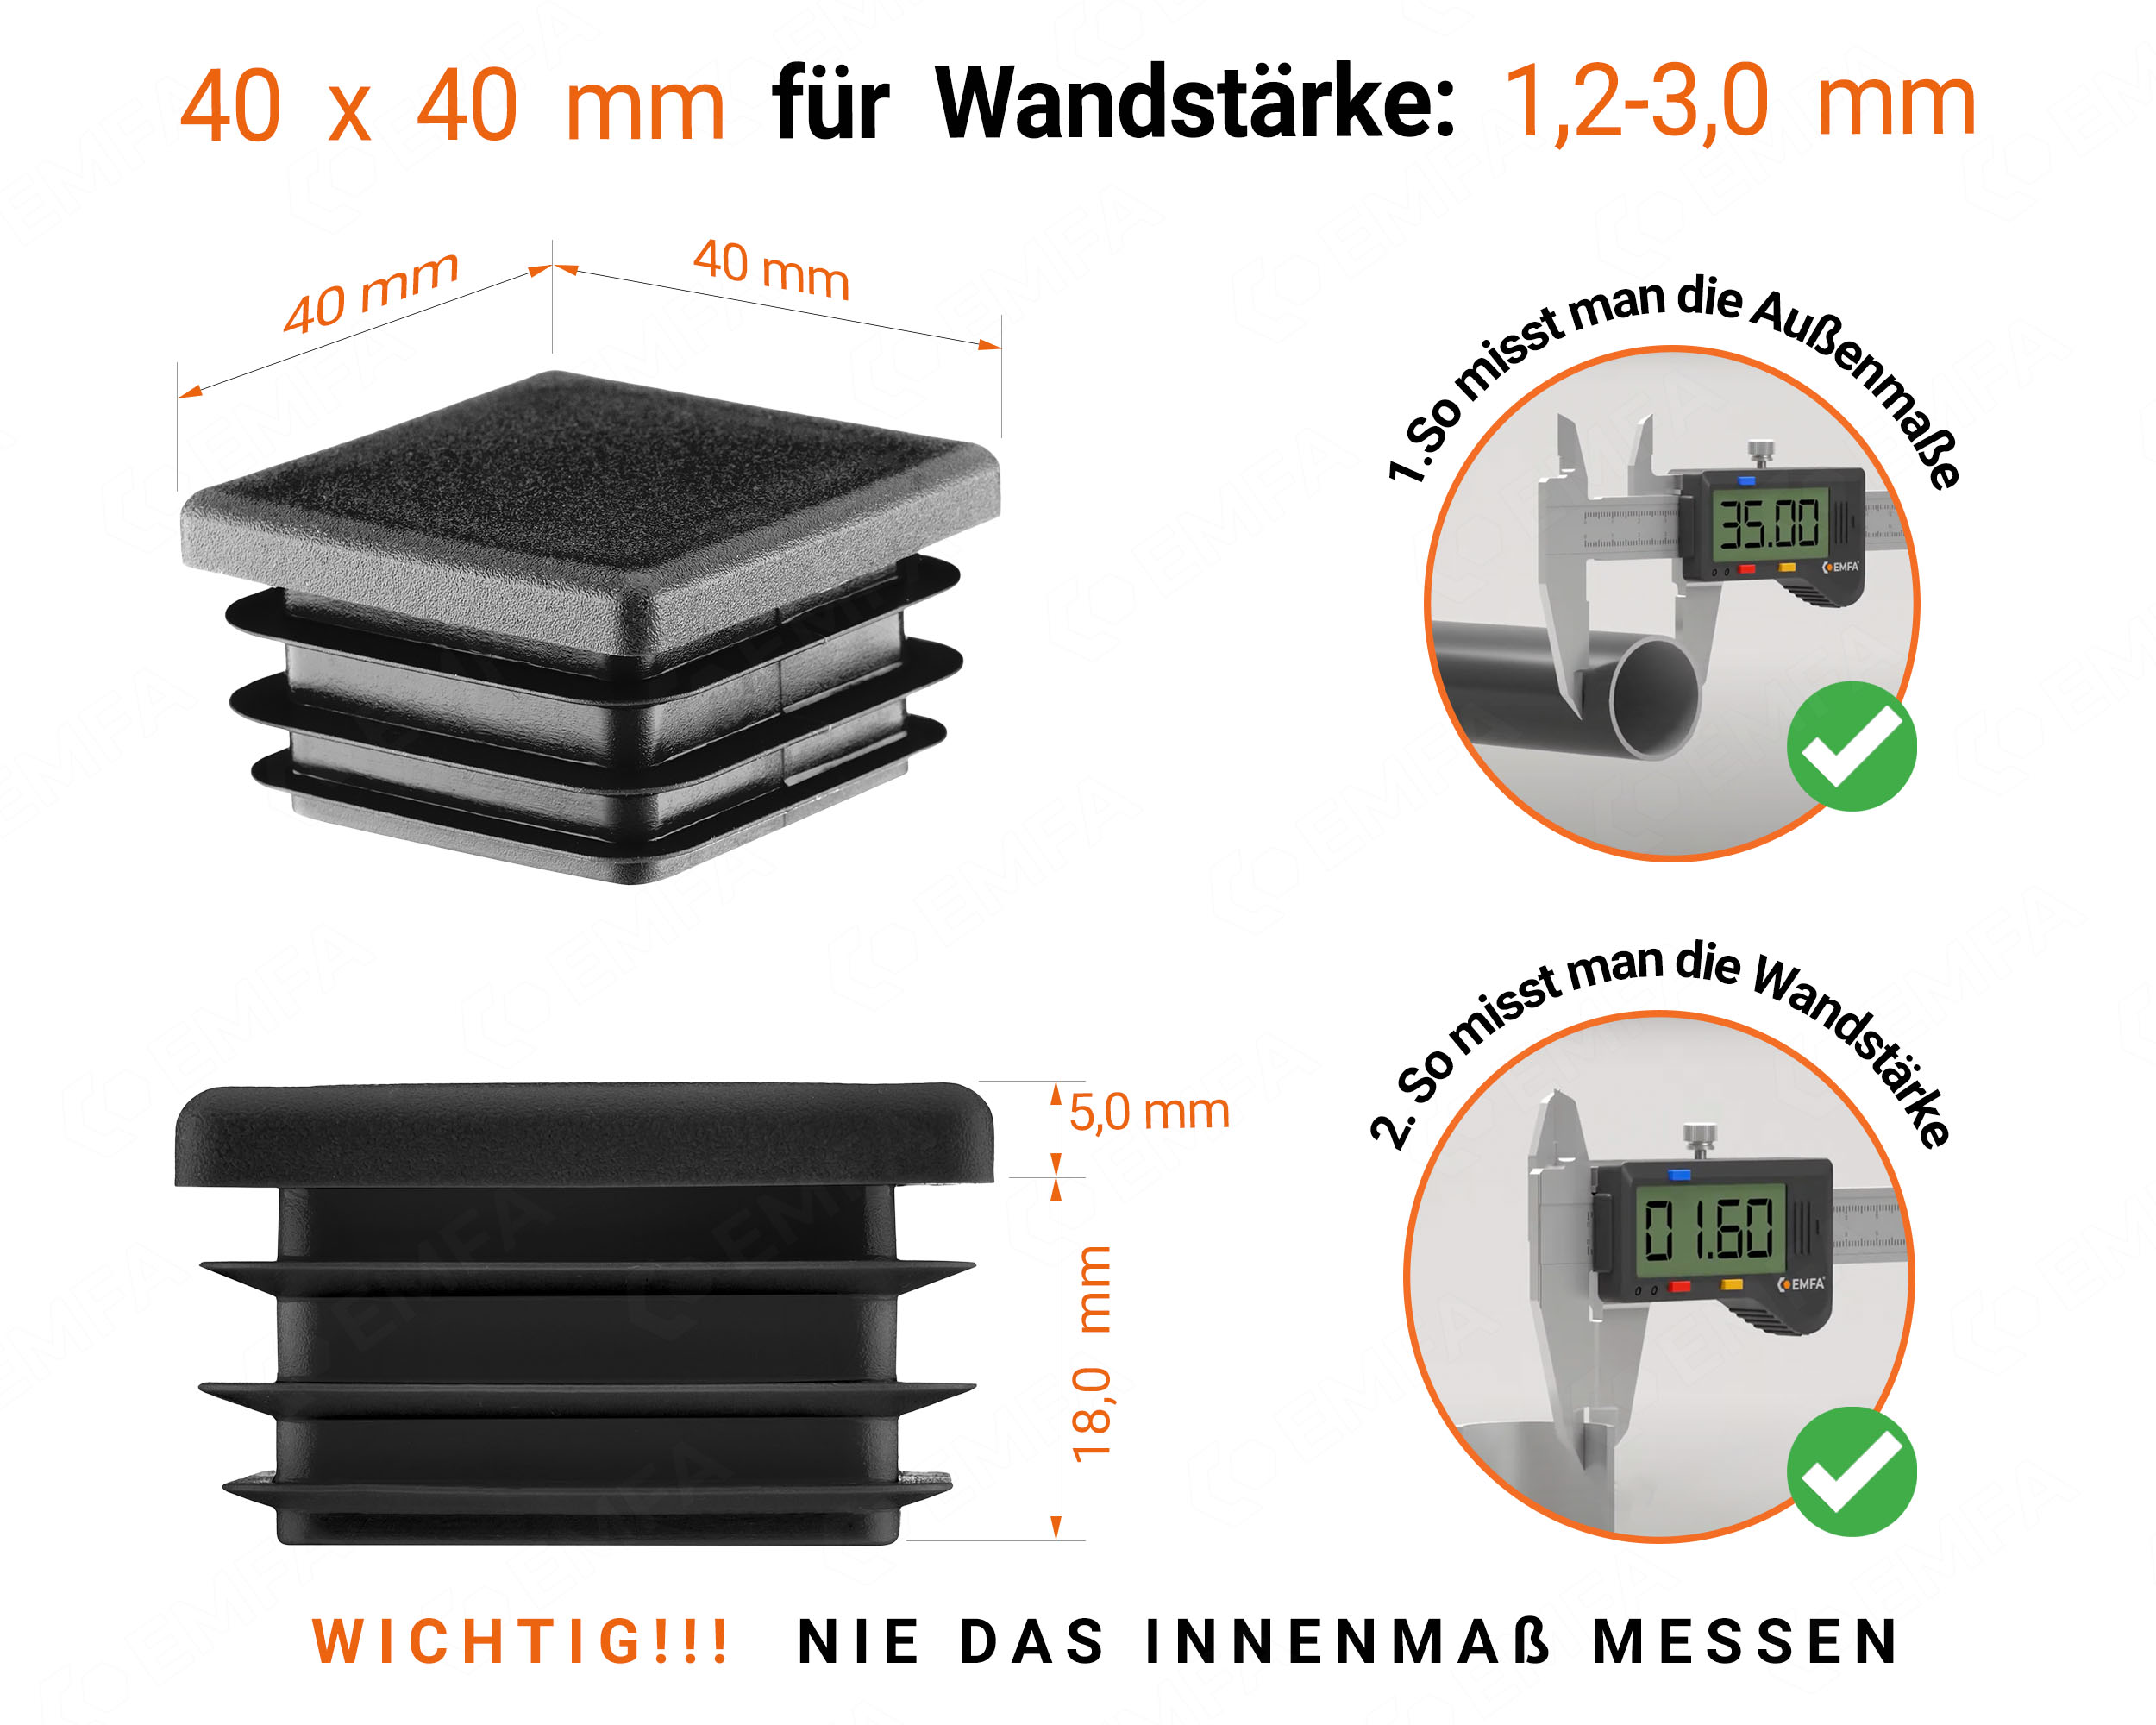 Schwarze Endkappe für Vierkantrohre in der Größe 40x40 mm mit technischen Abmessungen und Anleitung für korrekte Messung